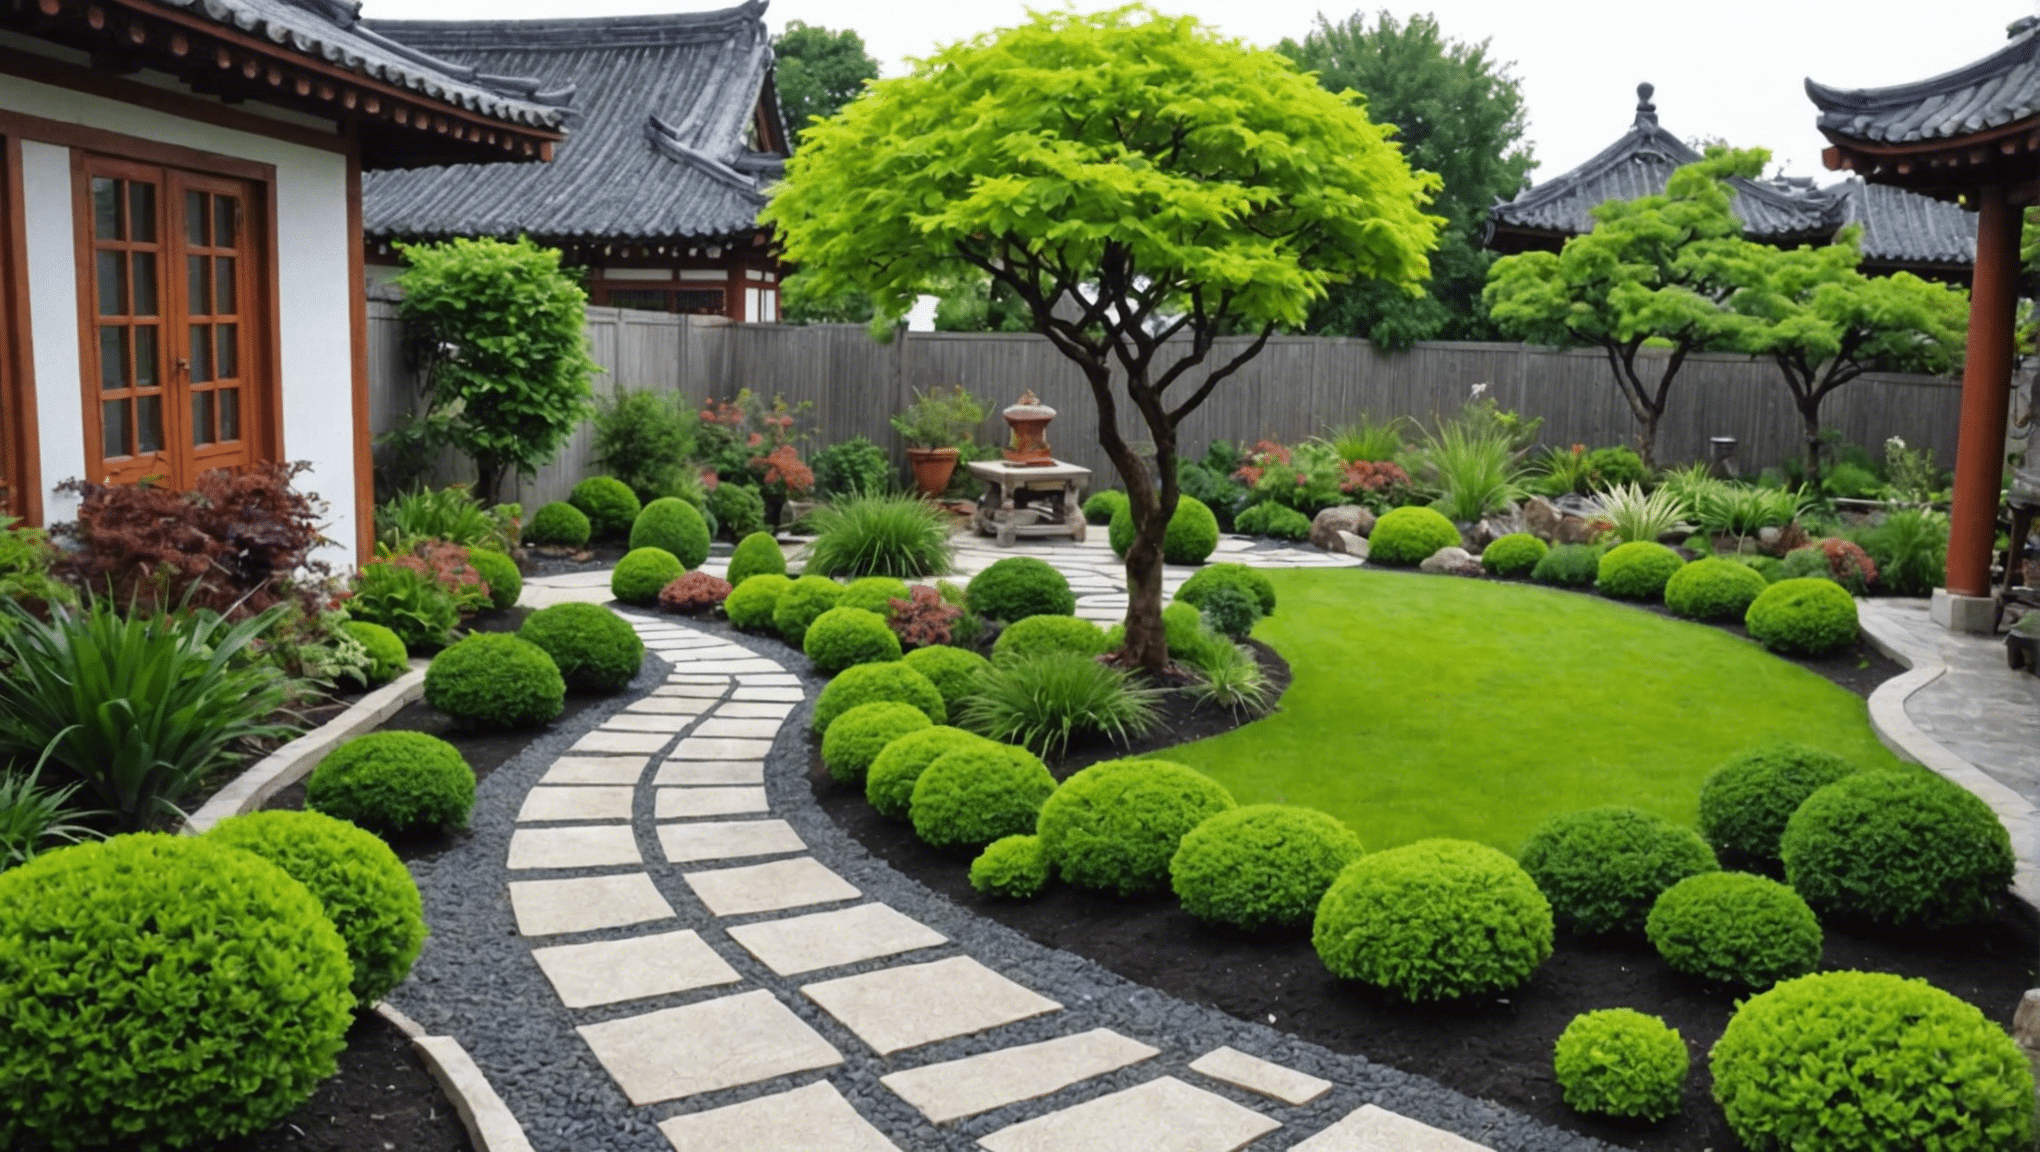 ontdek creatieve en inspirerende Aziatische tuinideeën voor uw buitenruimte met onze deskundige tips en inspiratie. van traditionele Japanse tuinen tot moderne zen-ontwerpen, vind de perfecte inspiratie voor uw buitenoase.